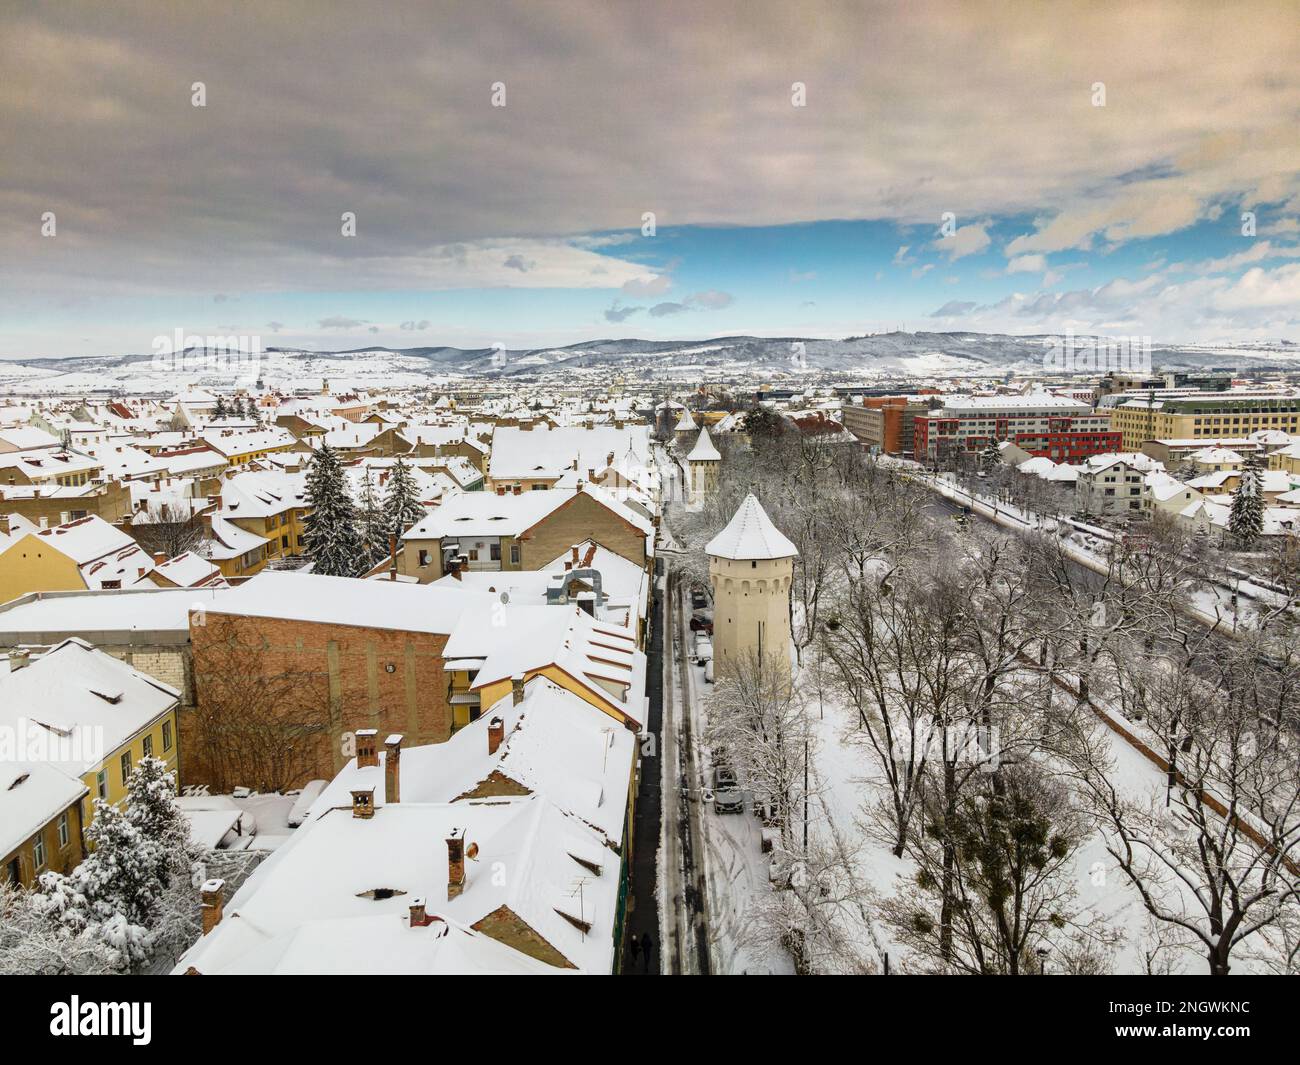 Photographie de drone du centre ville de Sibiu, Roumanie. La photographie a été prise à partir d'un drone à une altitude plus basse en hiver avec un défens médiéval Banque D'Images